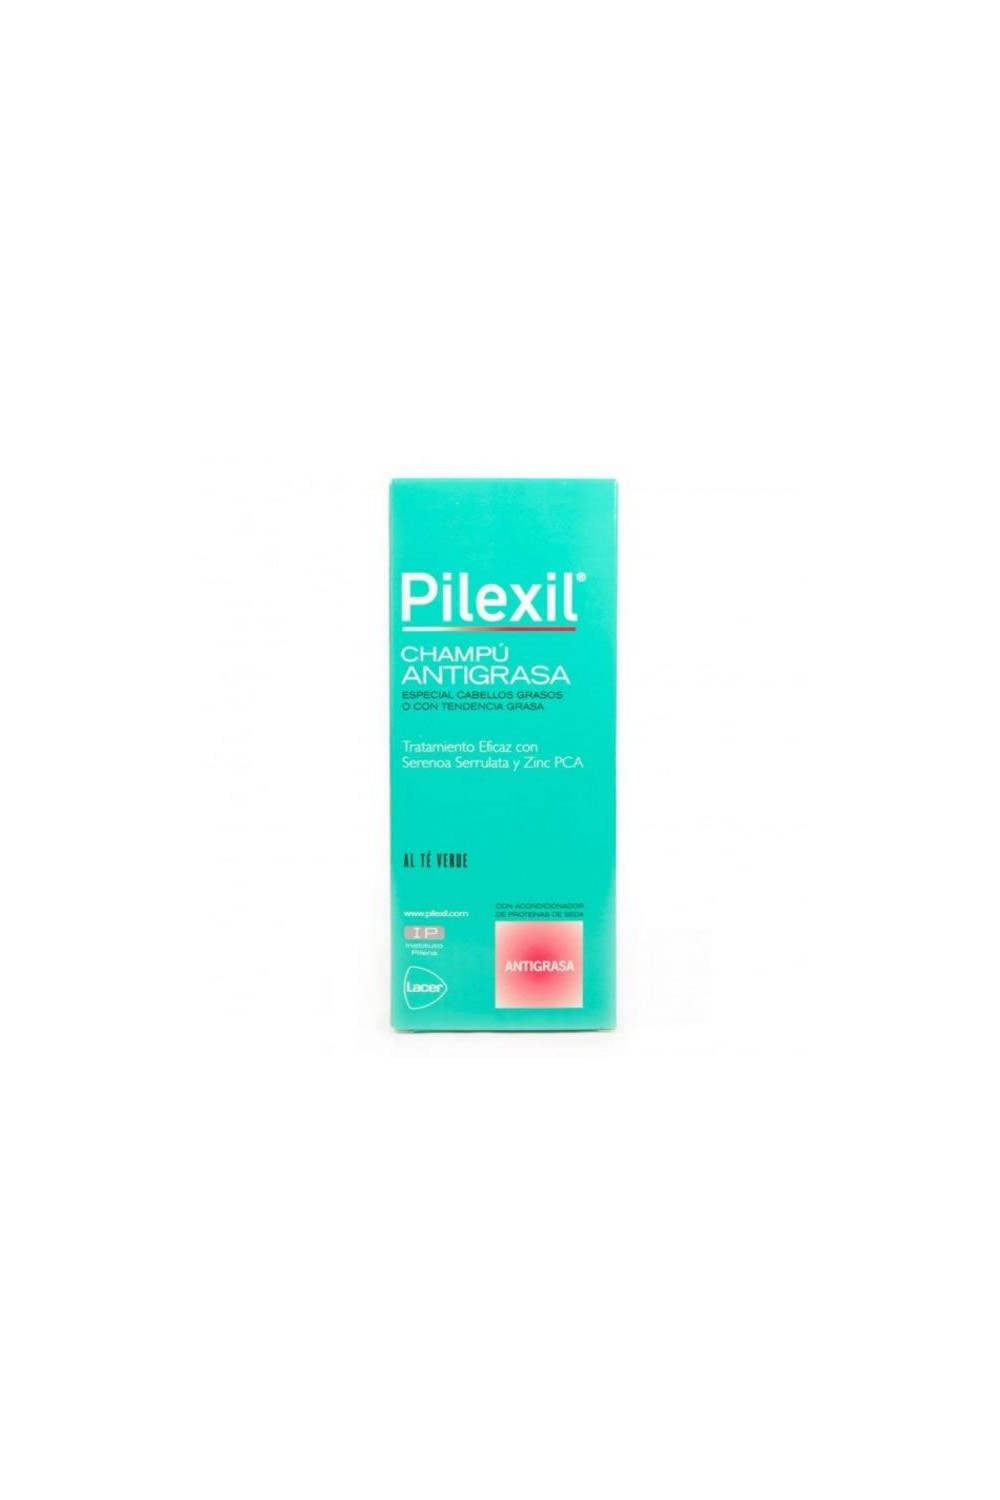 Pilexil Shampoo For Oily Hair 300ml